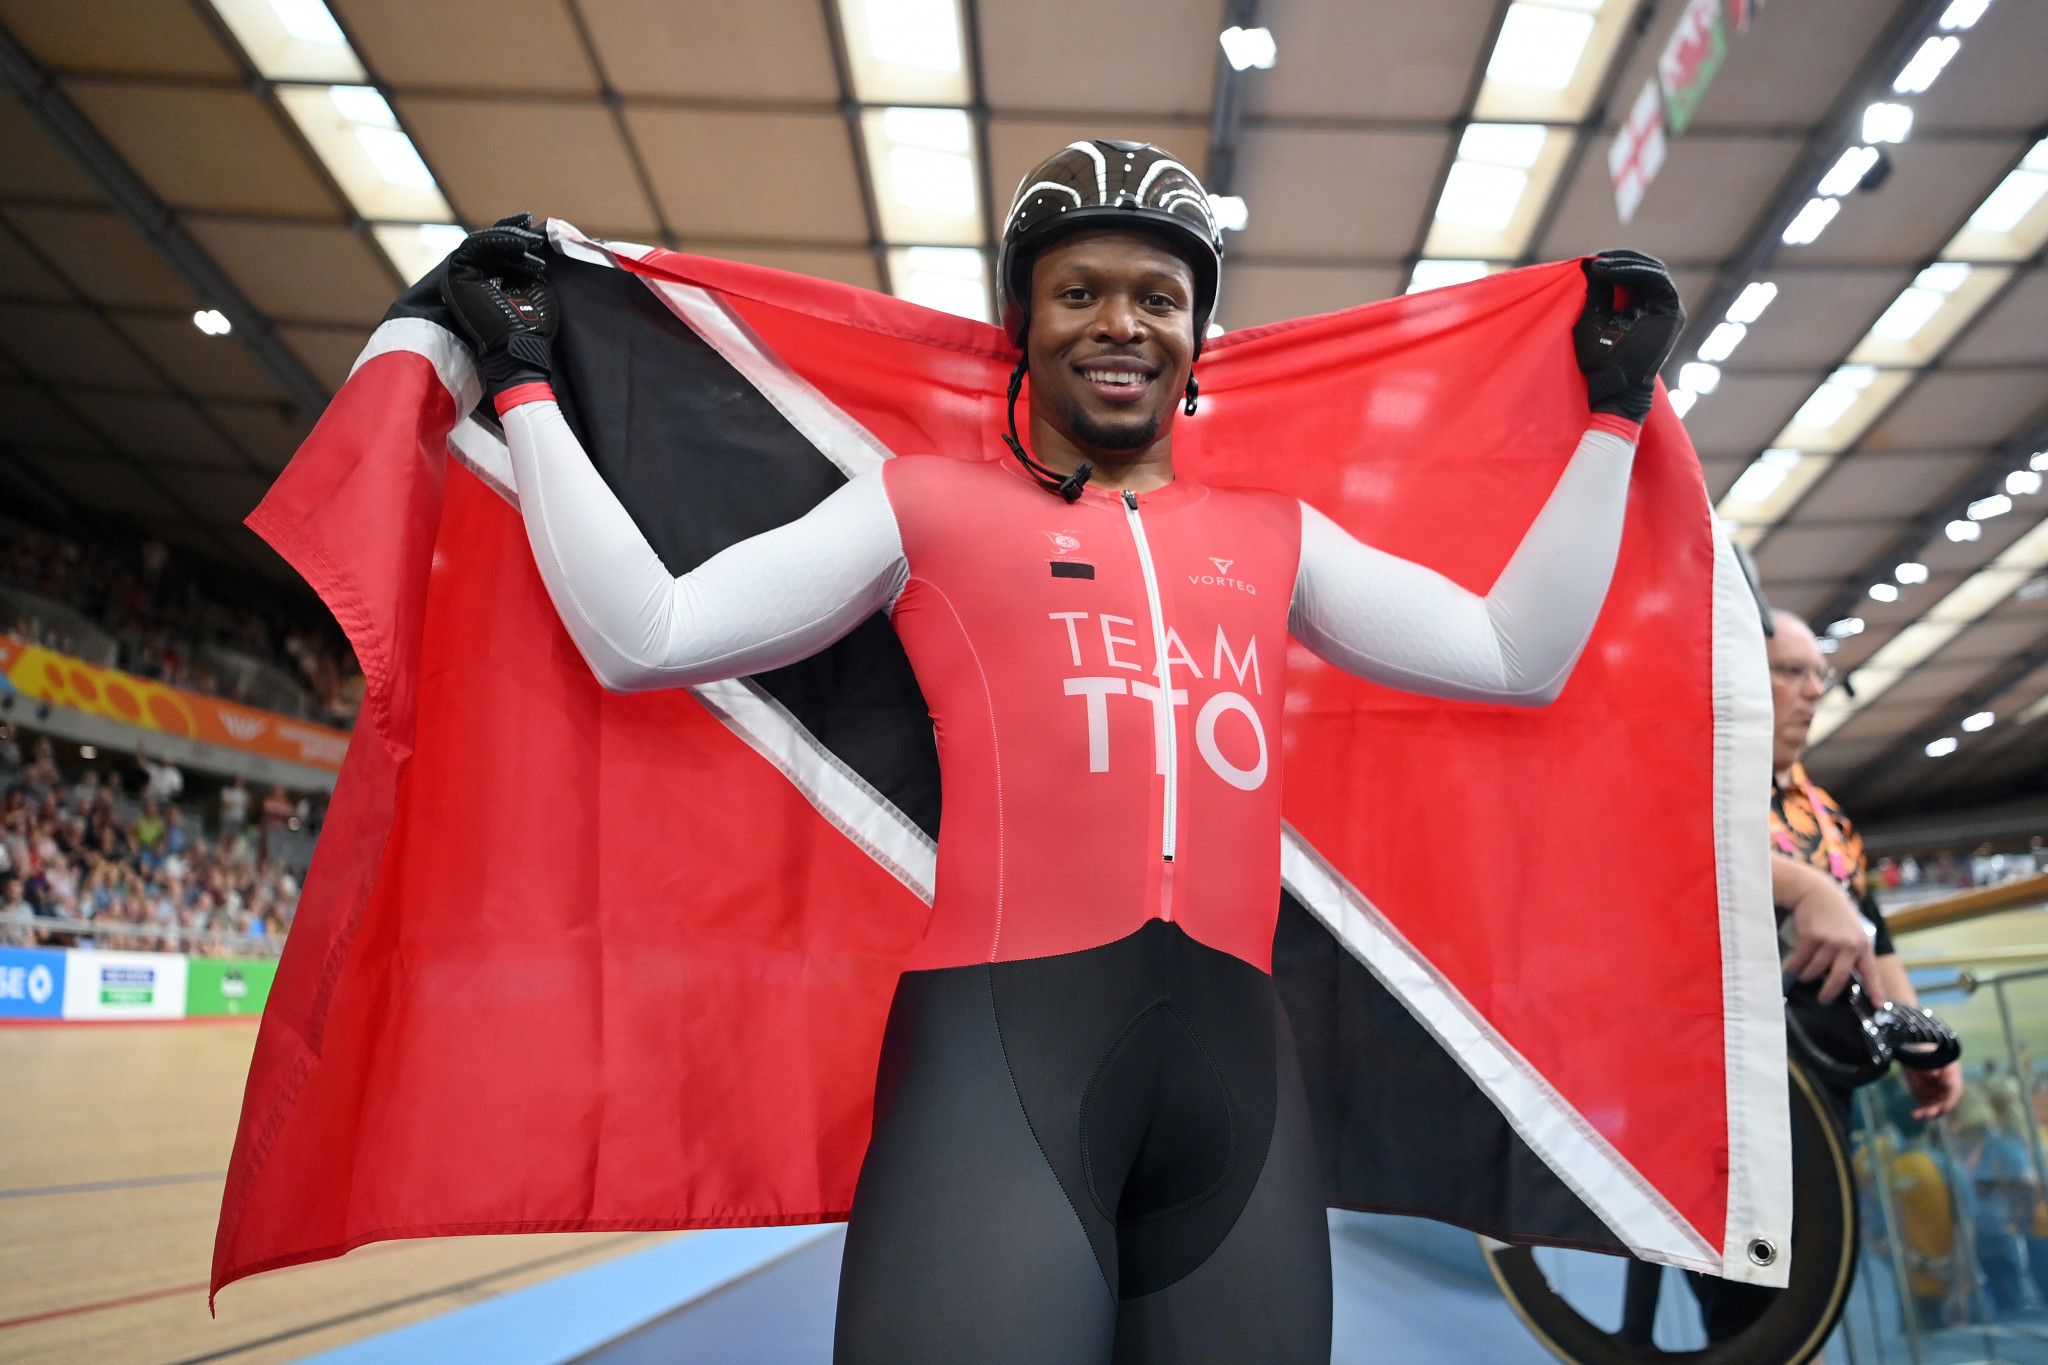 Trinidad and Tobago awards financial bonuses to Birmingham 2022 medallists